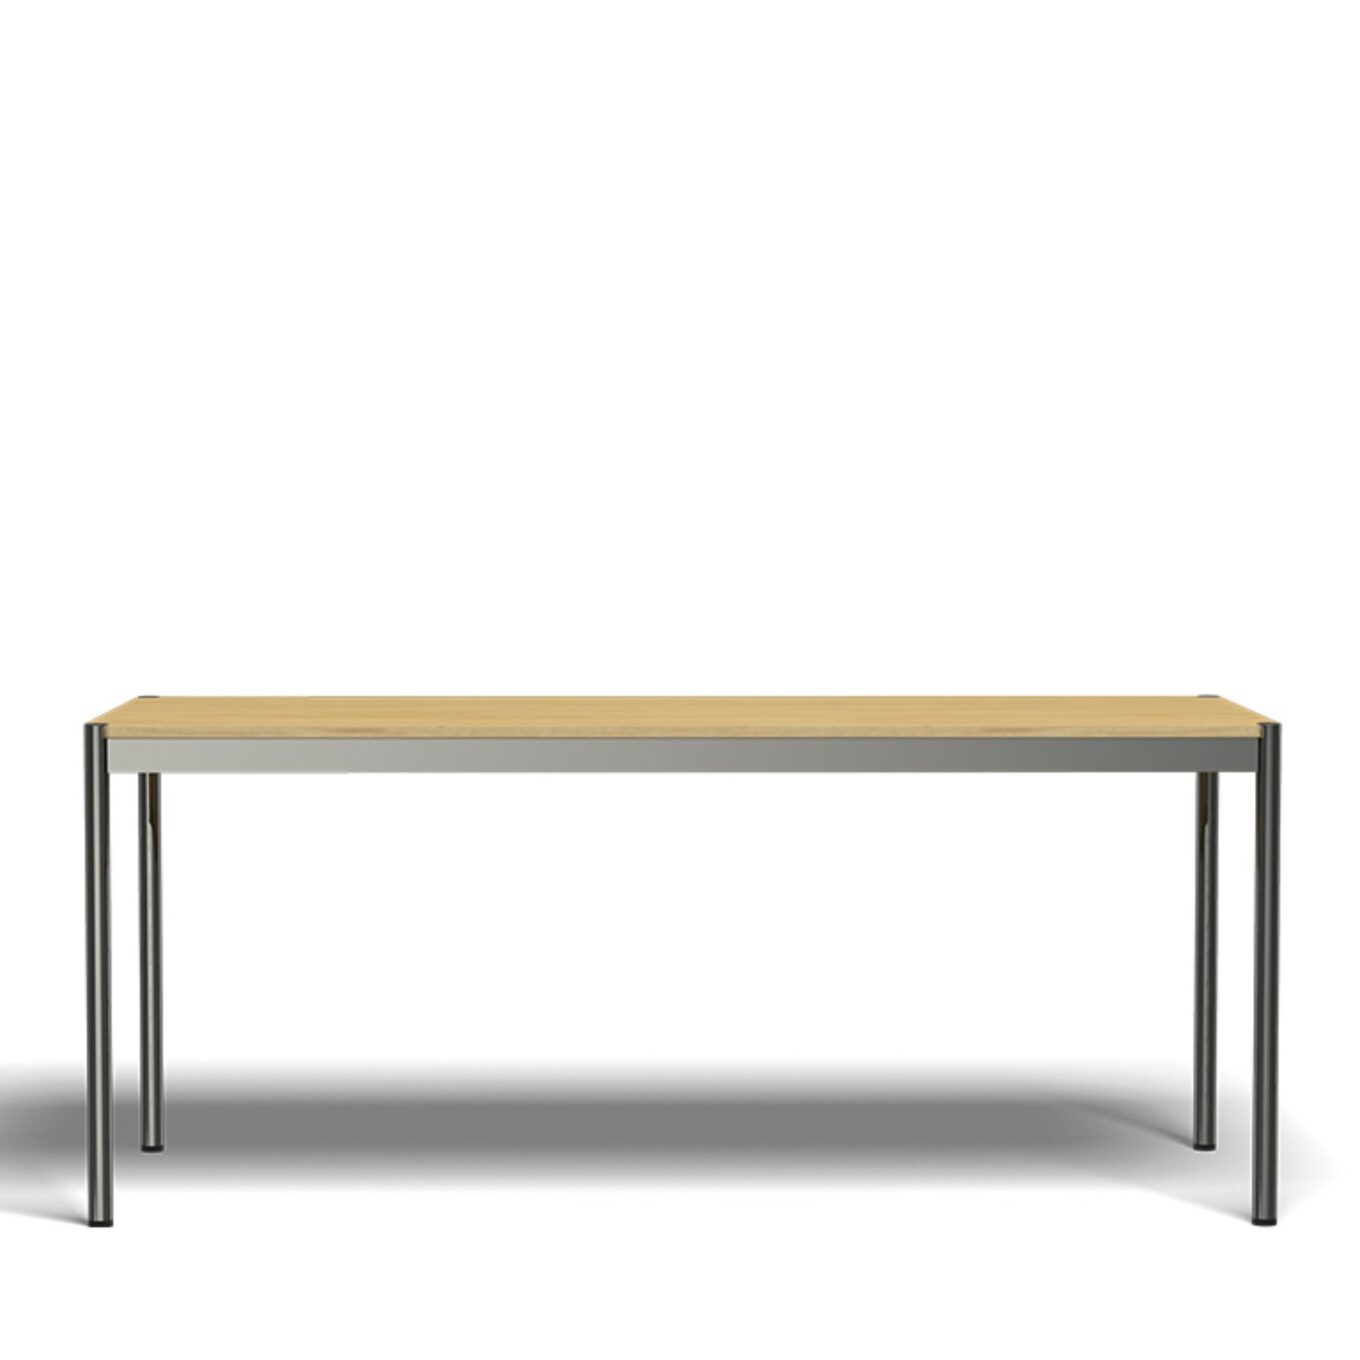 Table L1750 USM Haller – Chêne naturel - Image #1